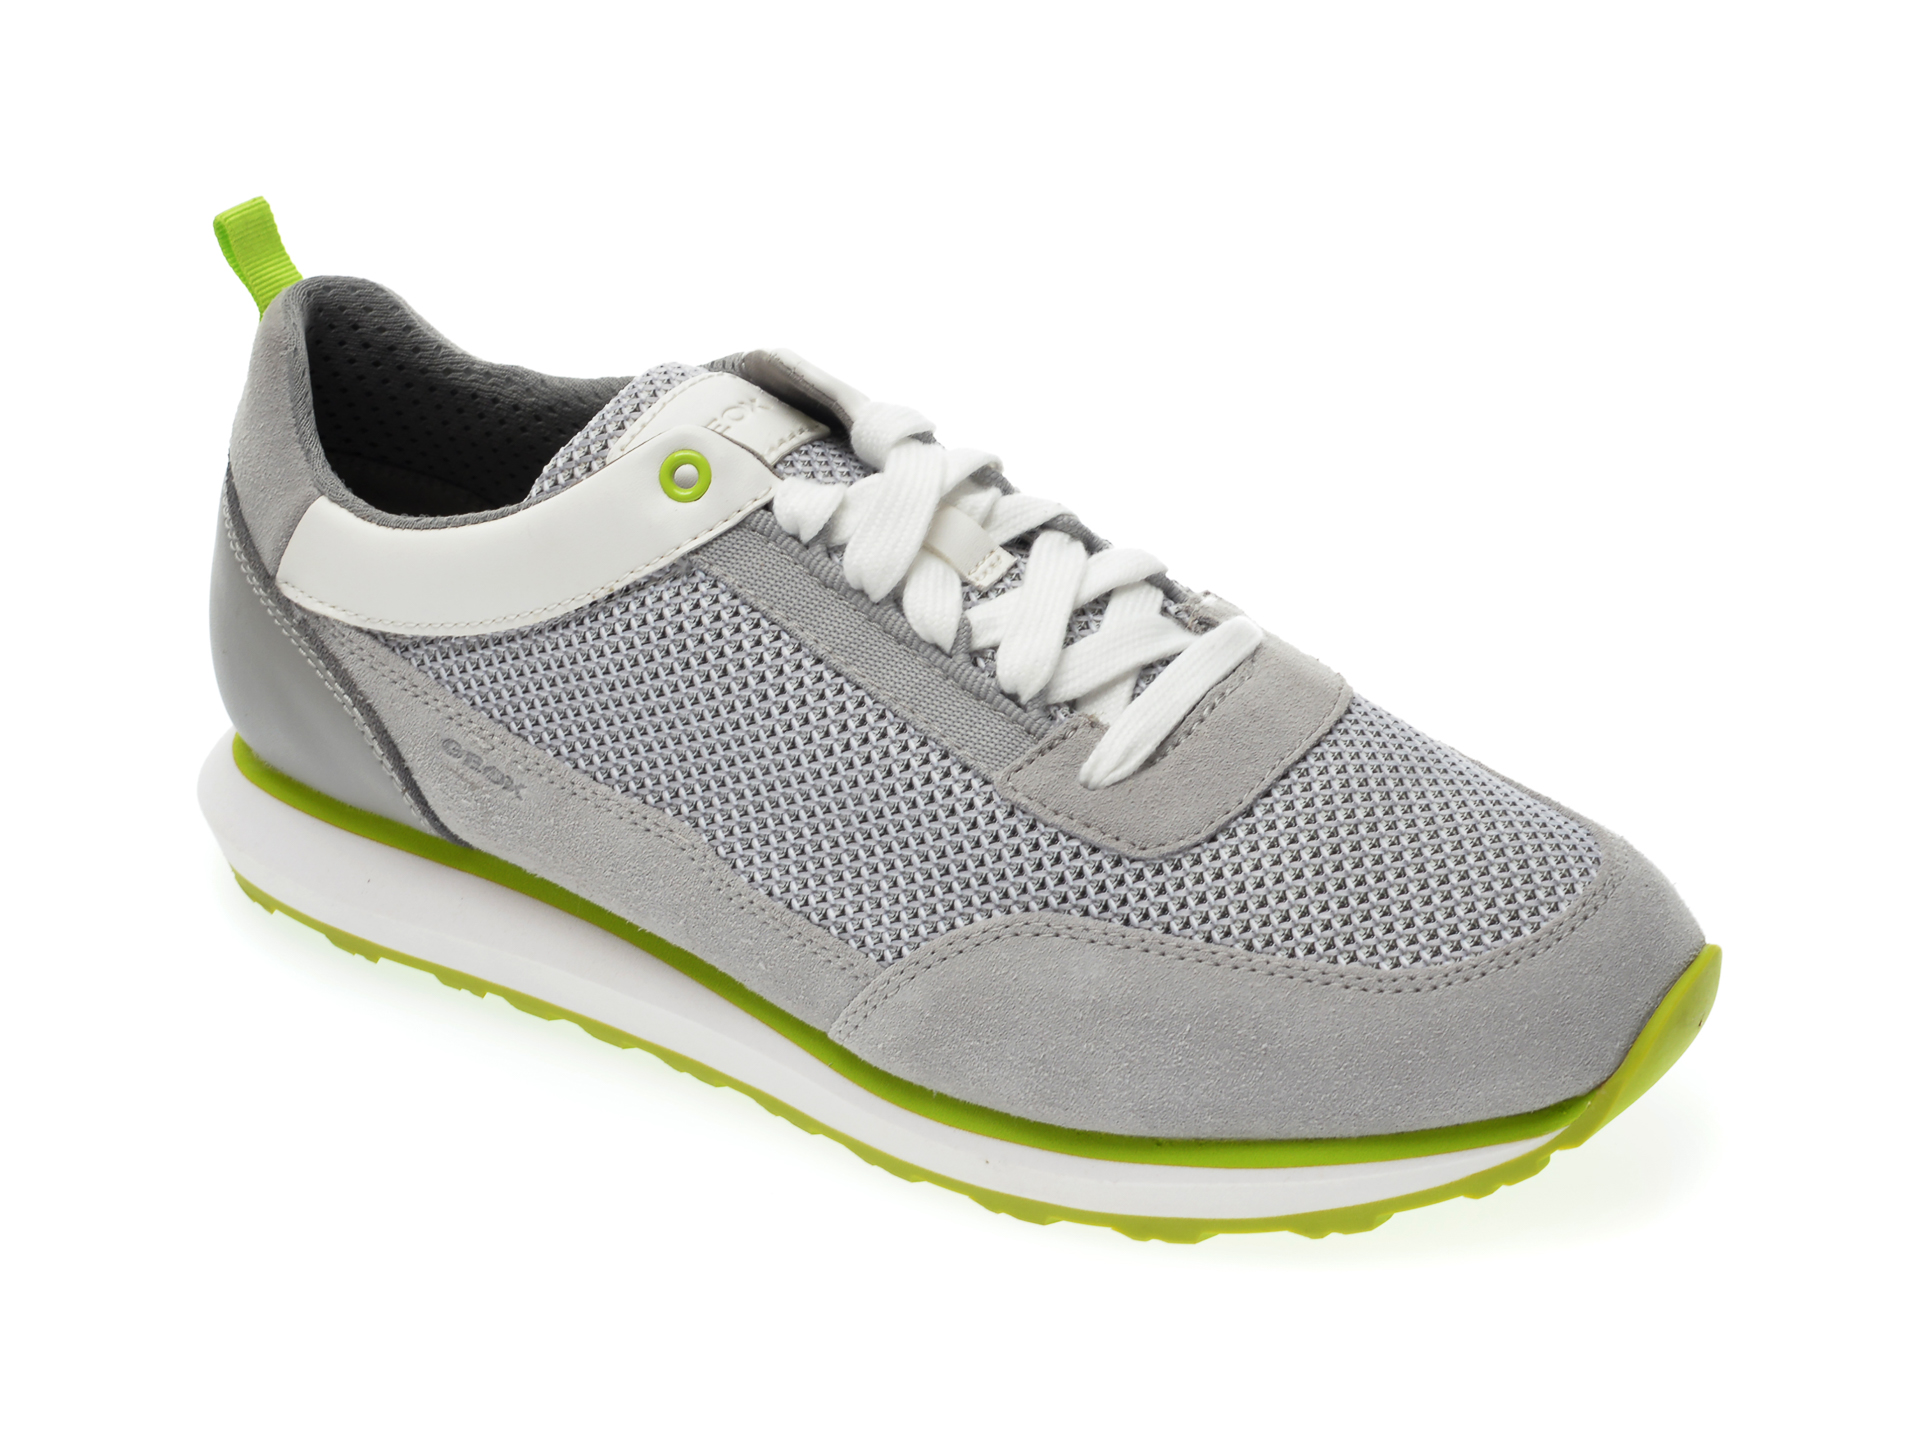 Pantofi sport GEOX sport gri, U029WC, din material textil si piele naturala